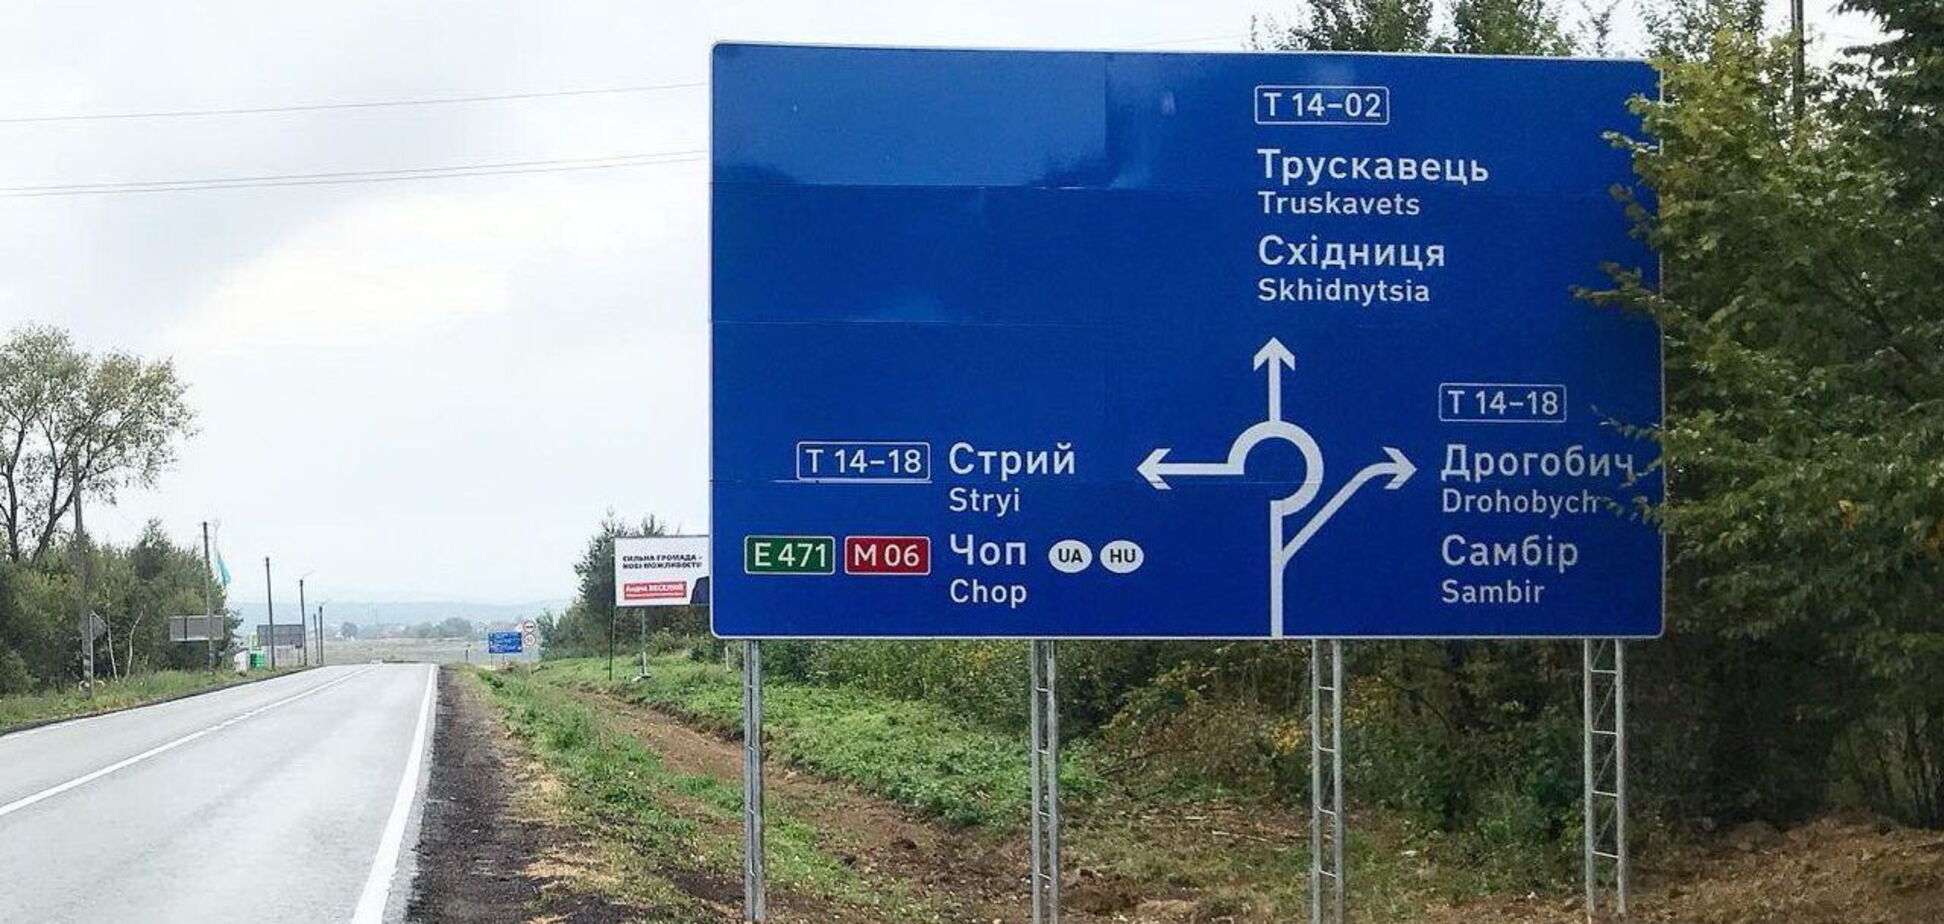 На відремонтованій трасі T-14-02 з’явилися нові дорожні знаки